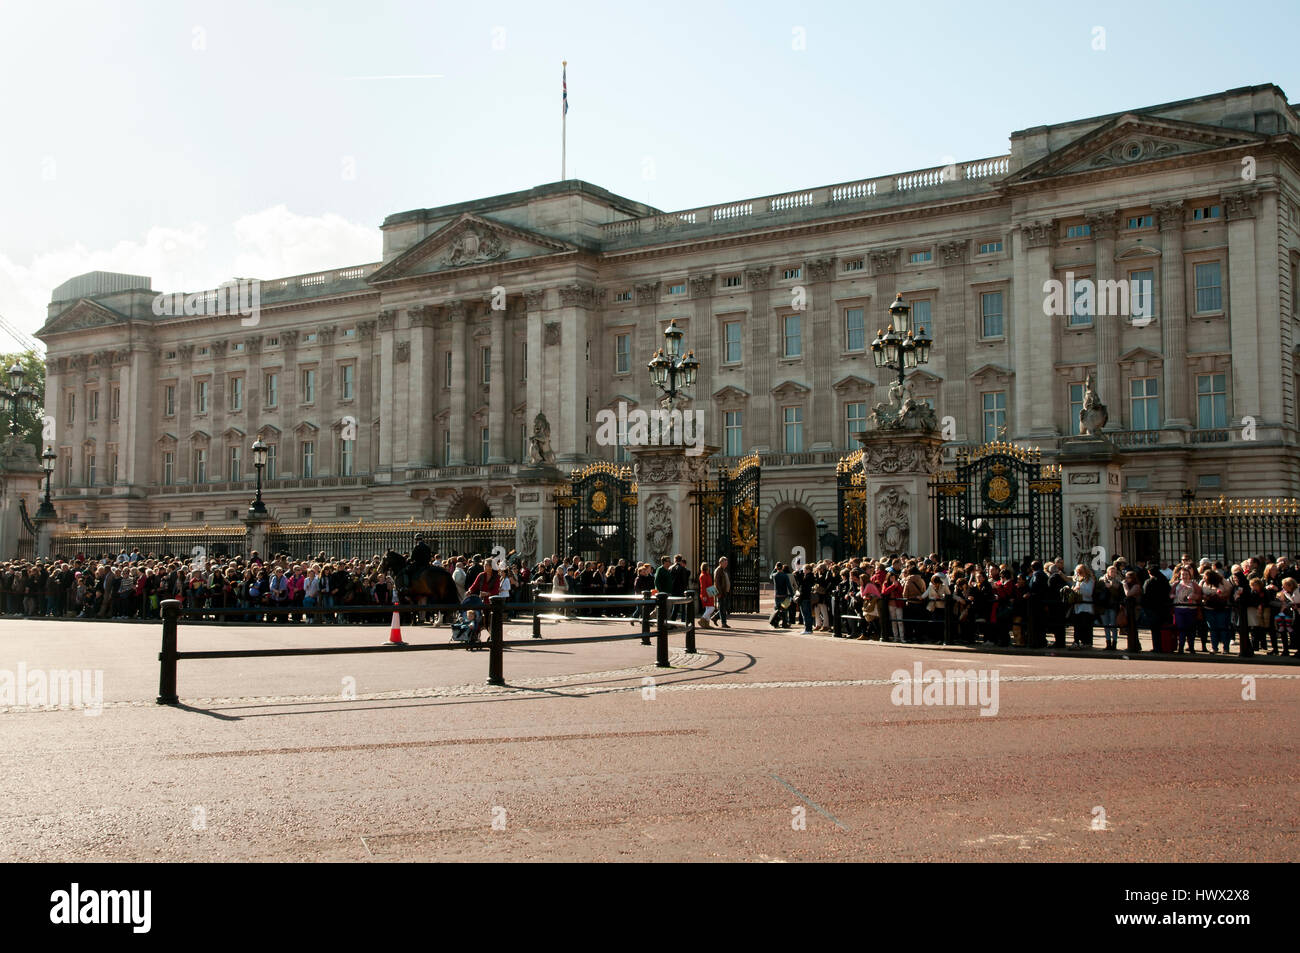 Buckingham Palace - London - UK Stock Photo